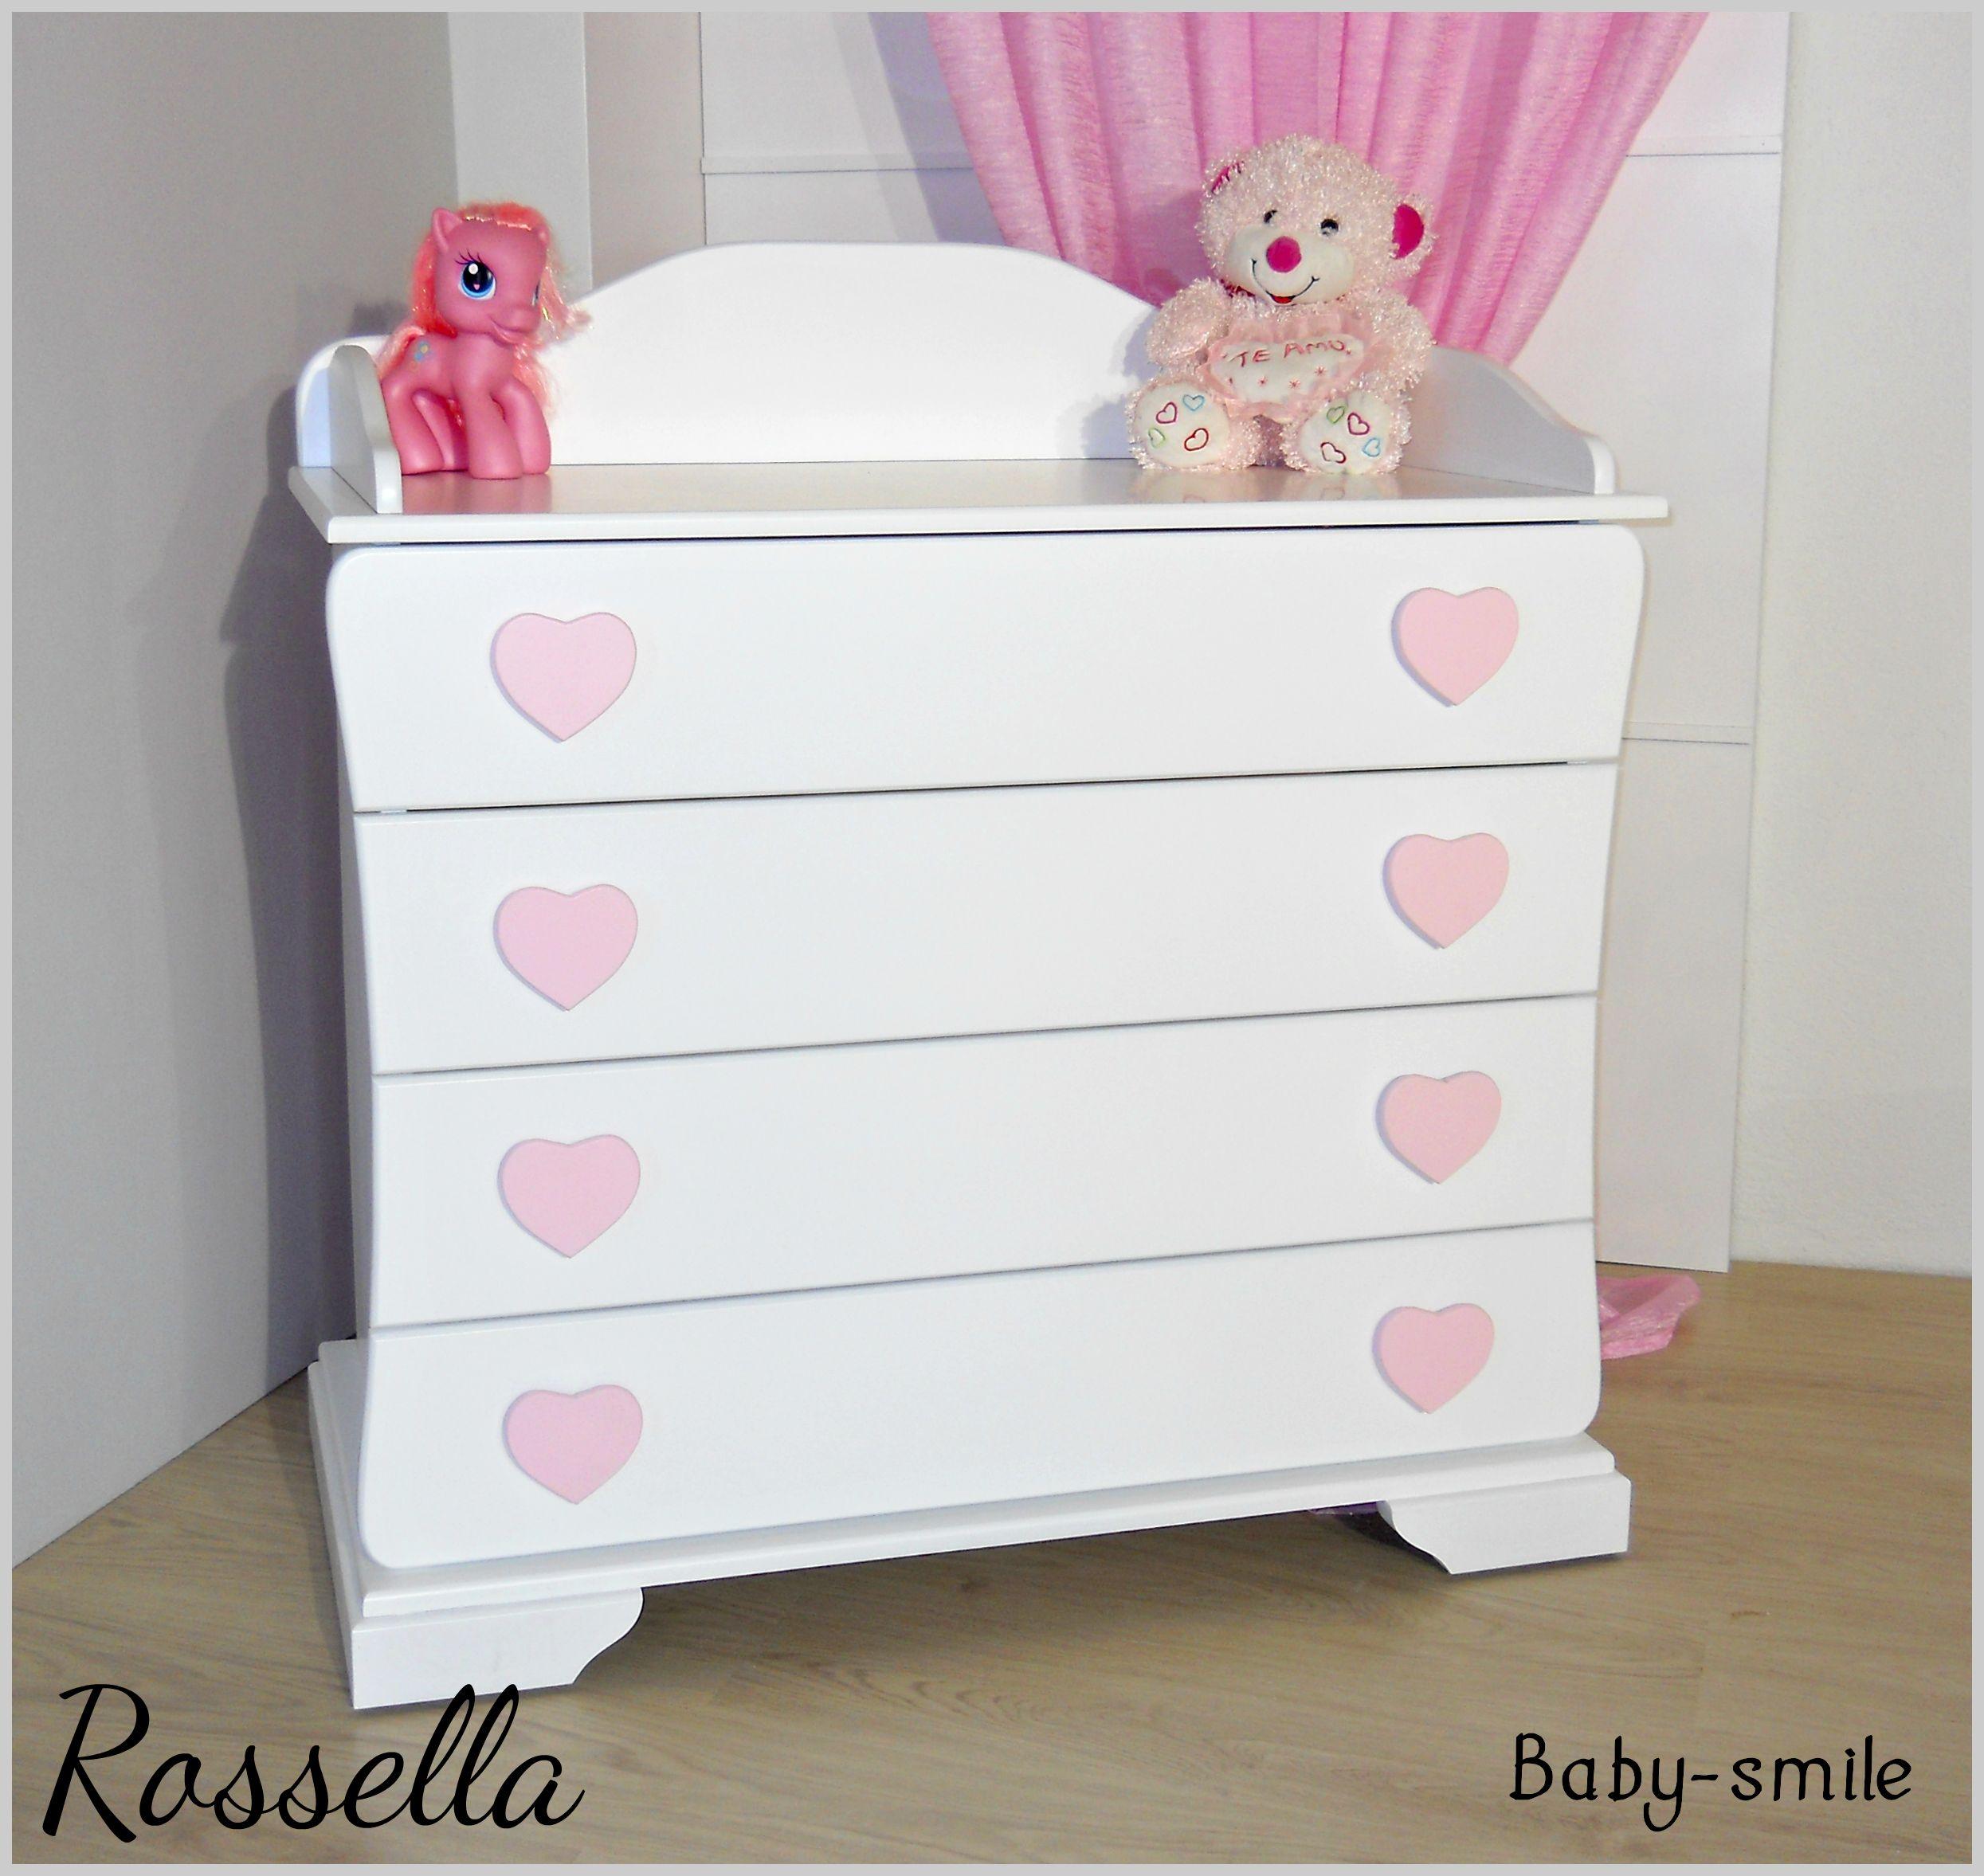 Βρεφική συρταριέρα αλλαξιέρα Rossella Baby Smile